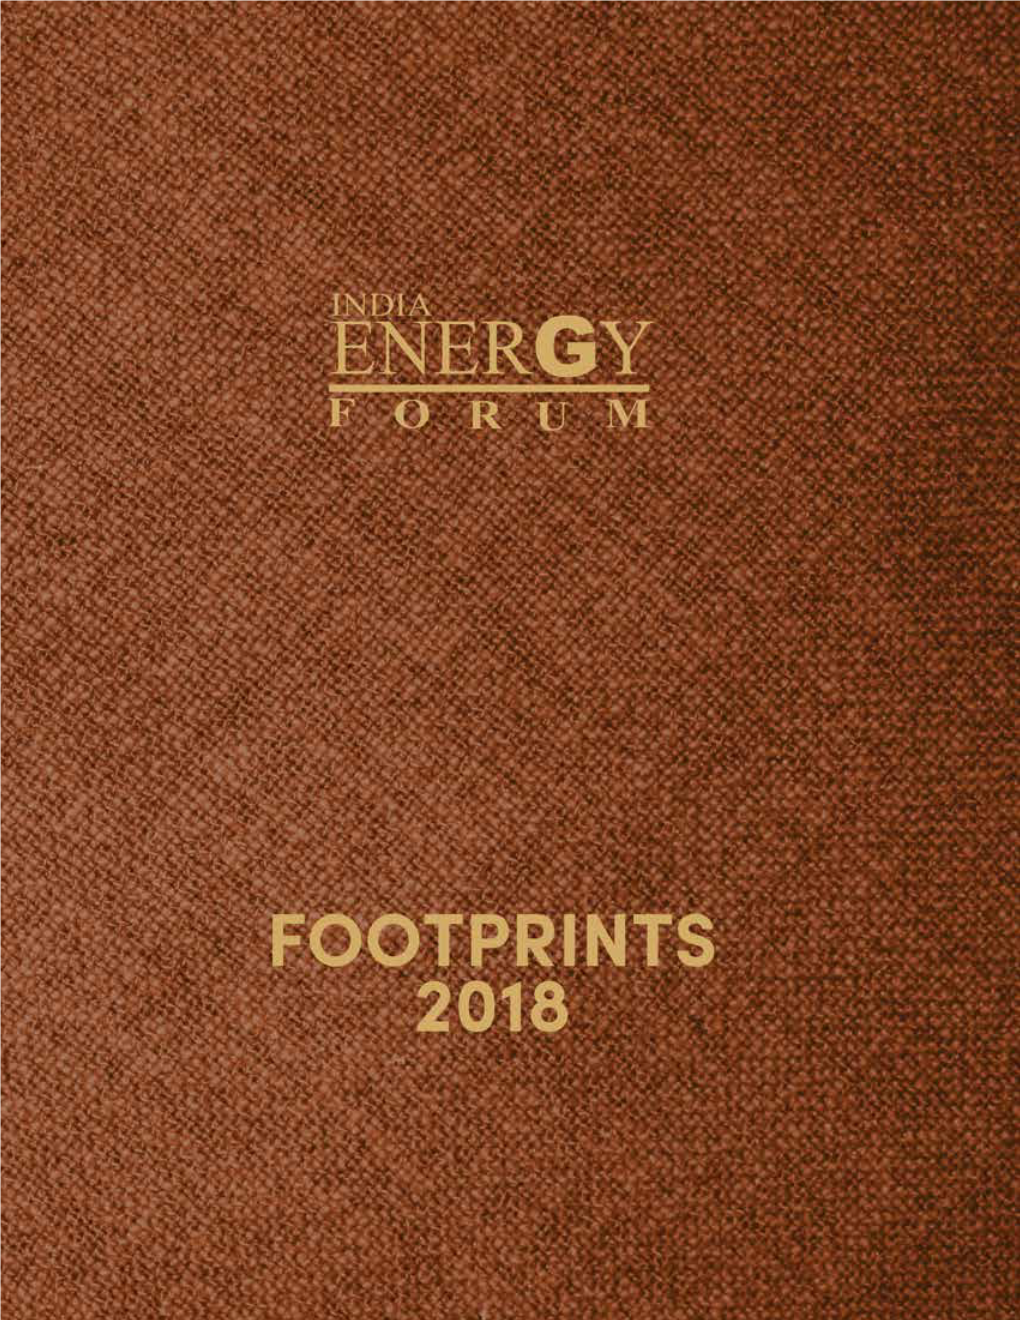 IEF Foot Print 2019 6Th Draft.Pdf